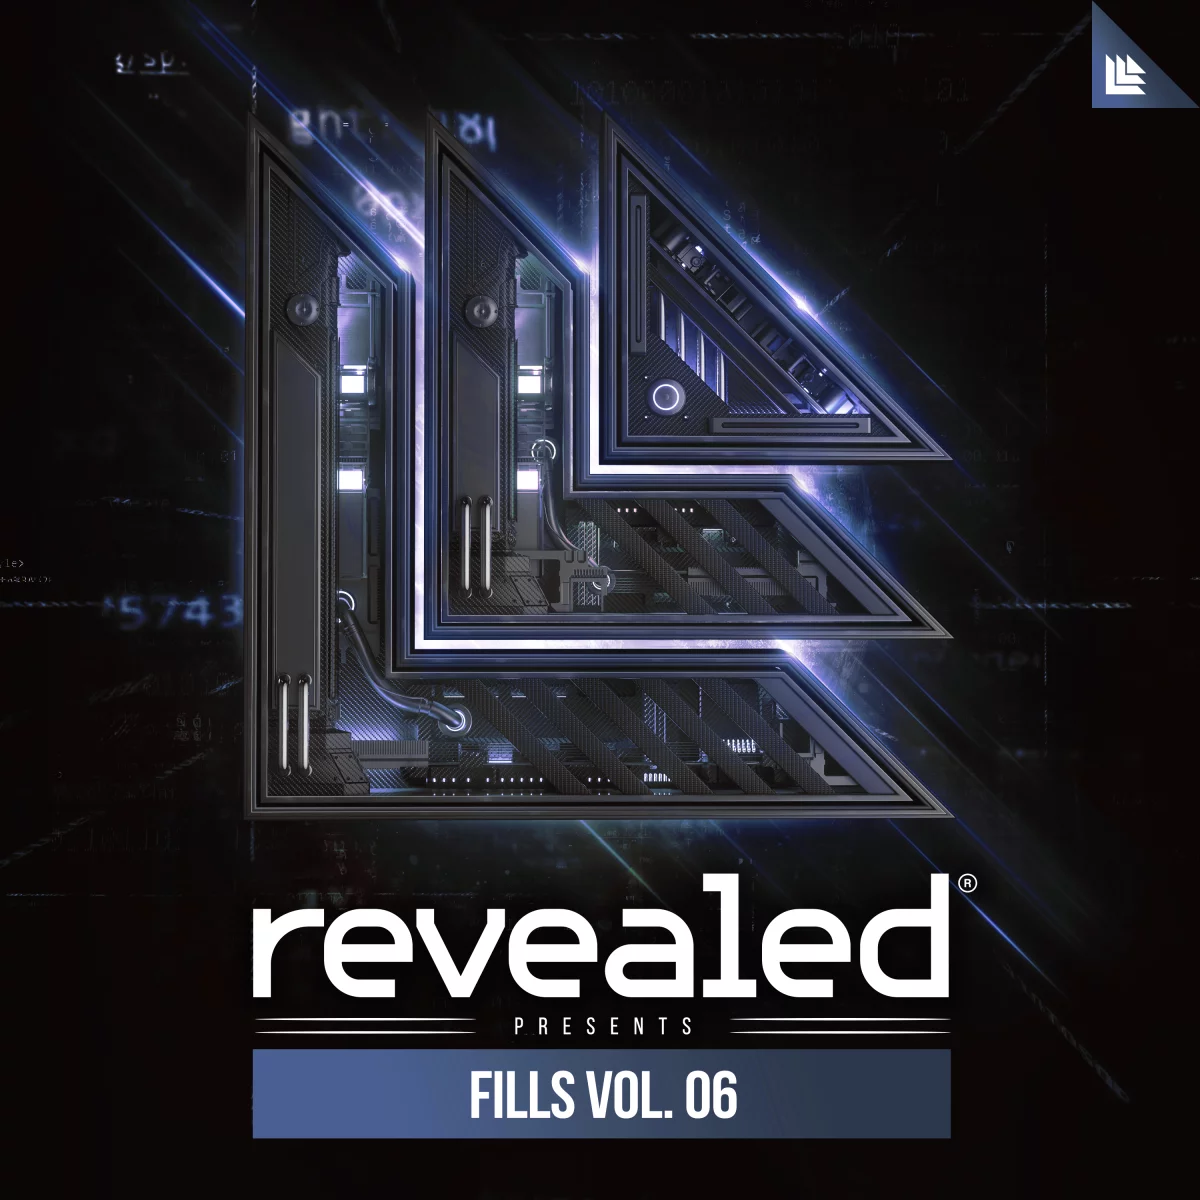 Revealed Fills Vol. 6 - revealedrec⁠ 